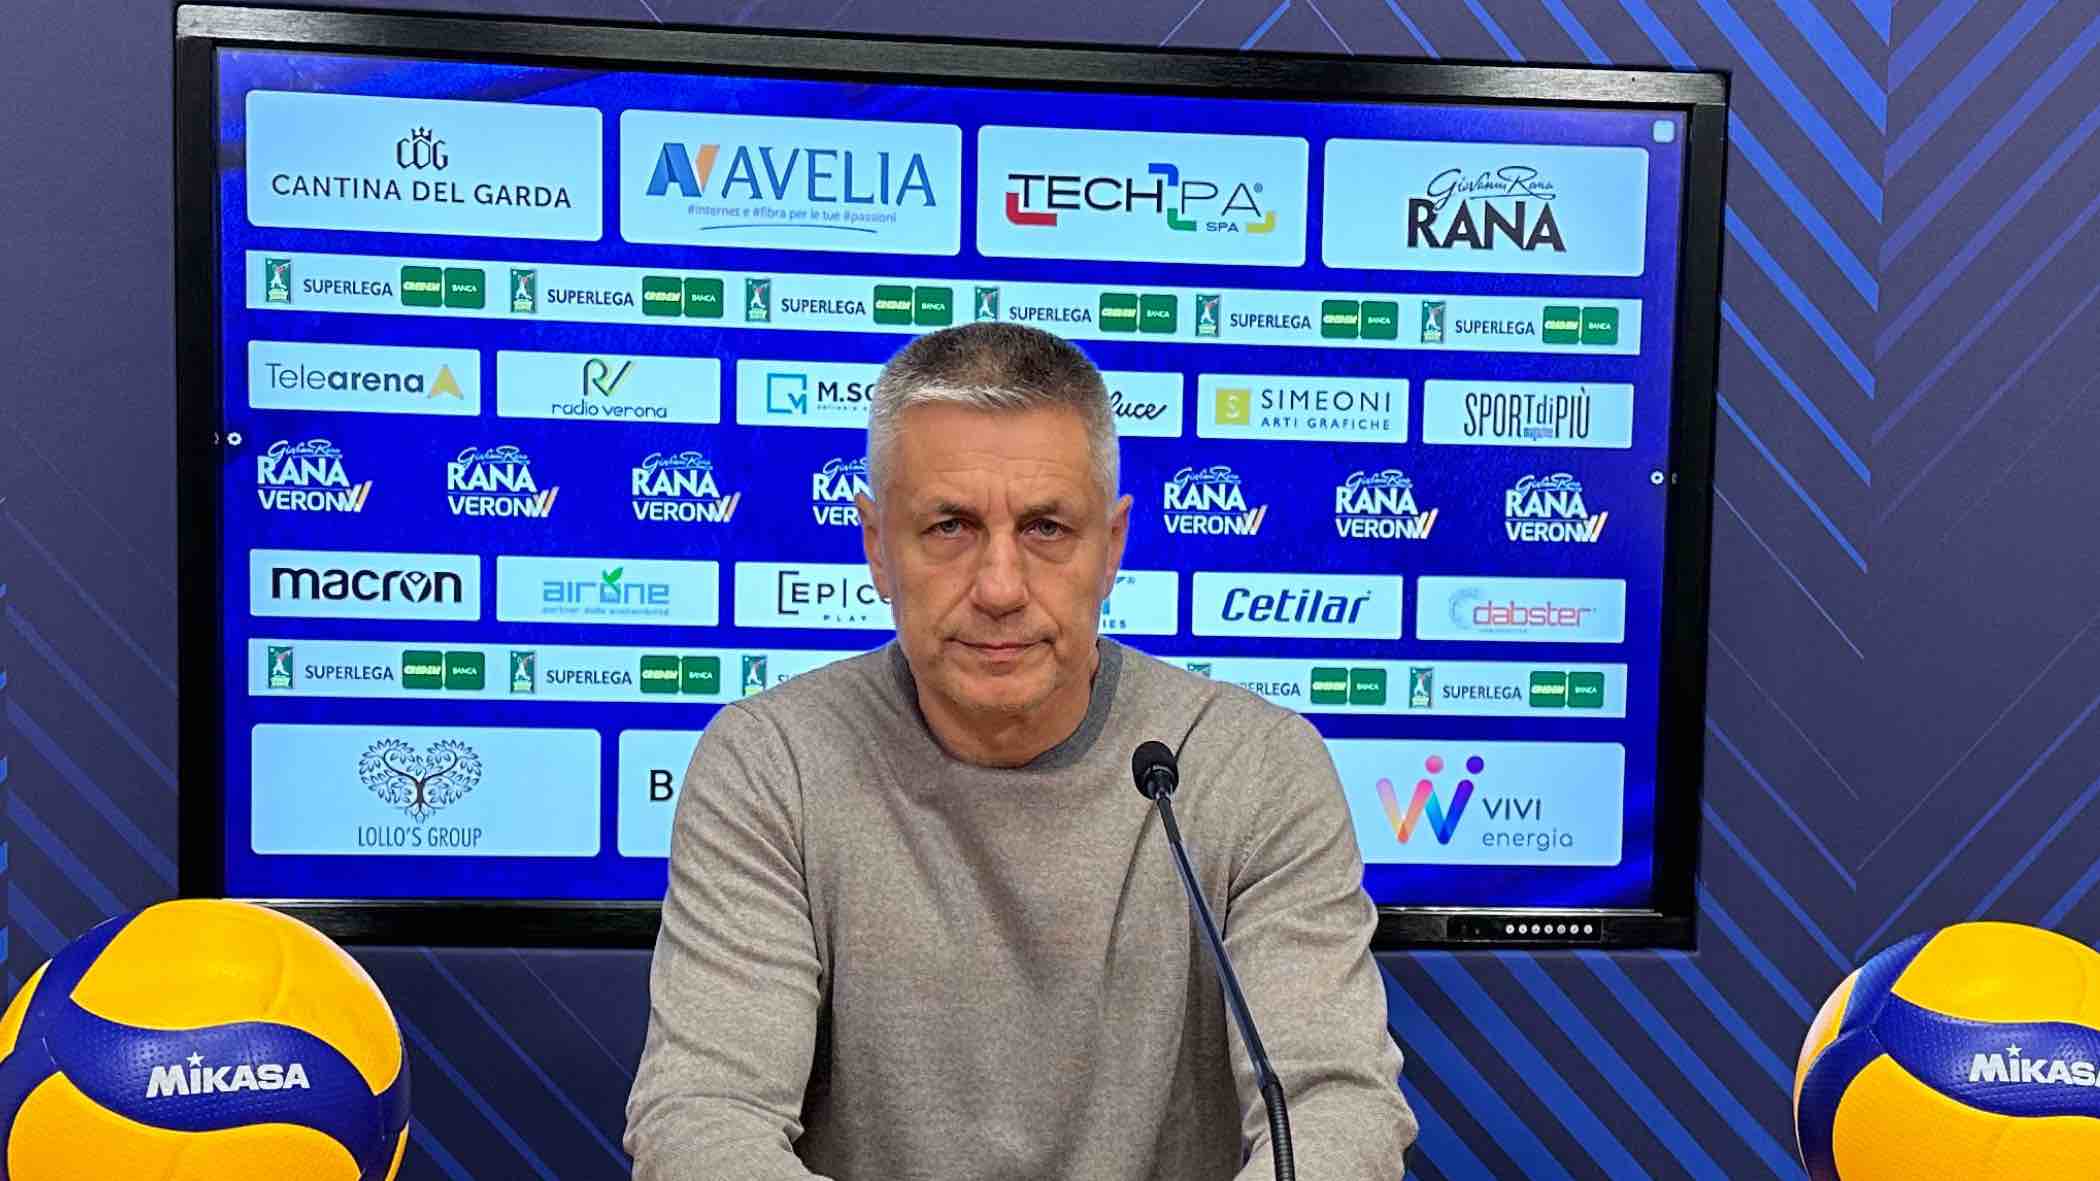 Rana Verona, Coach Stoytchev presenta la sfida con Catania: “Non esistono partite facili. Serviranno testa e lavoro” 